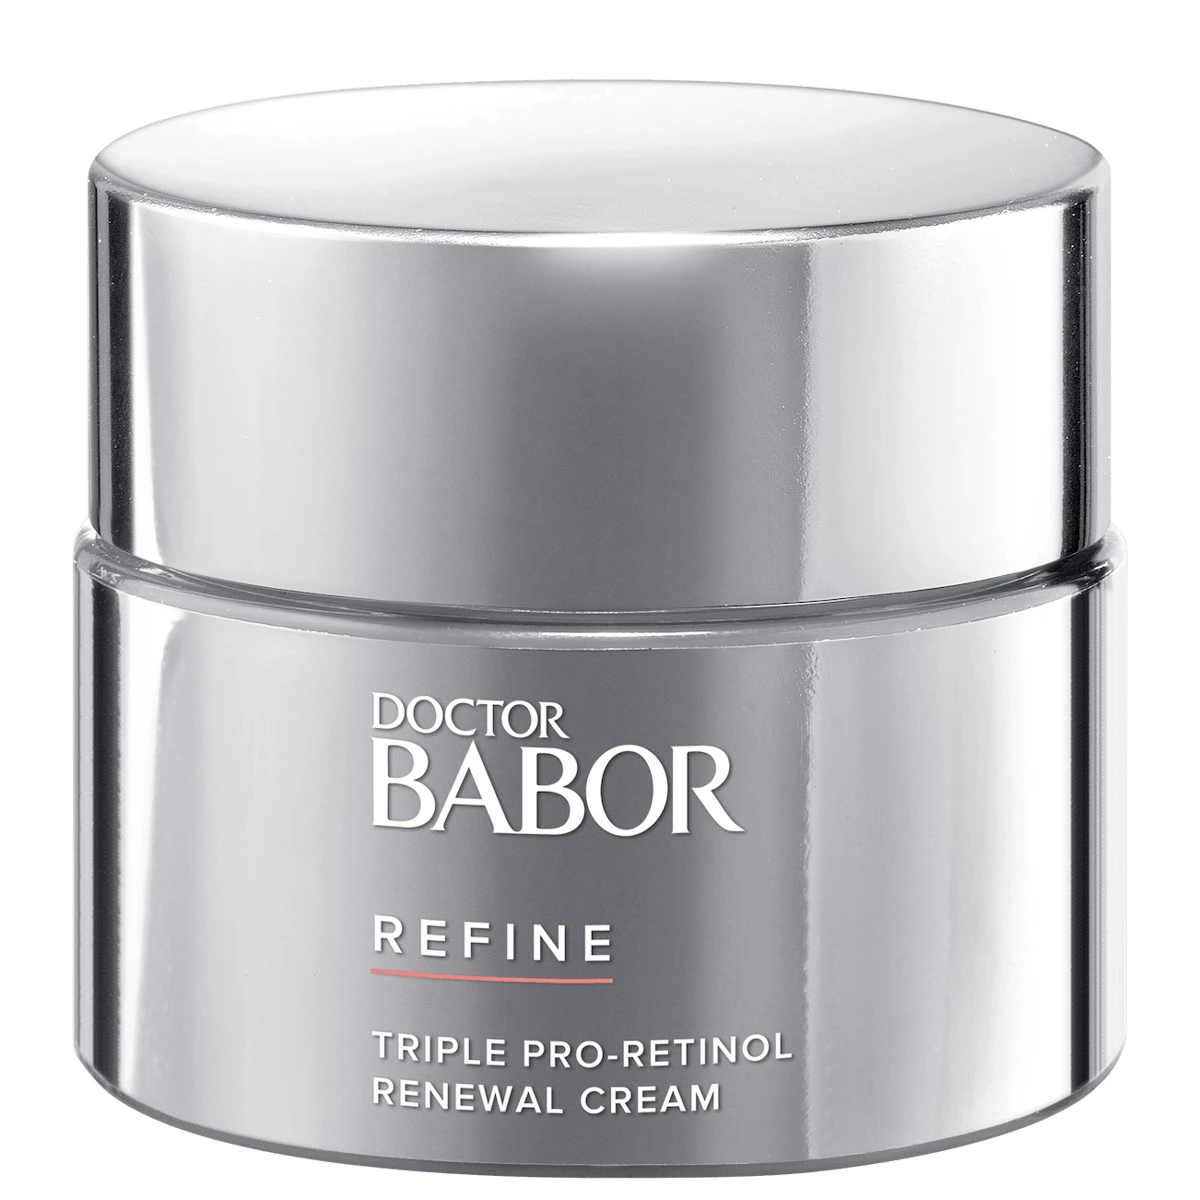 BABOR Triple Pro-Retinol Renewal Cream 50ml - интернет-магазин профессиональной косметики Spadream, изображение 49150